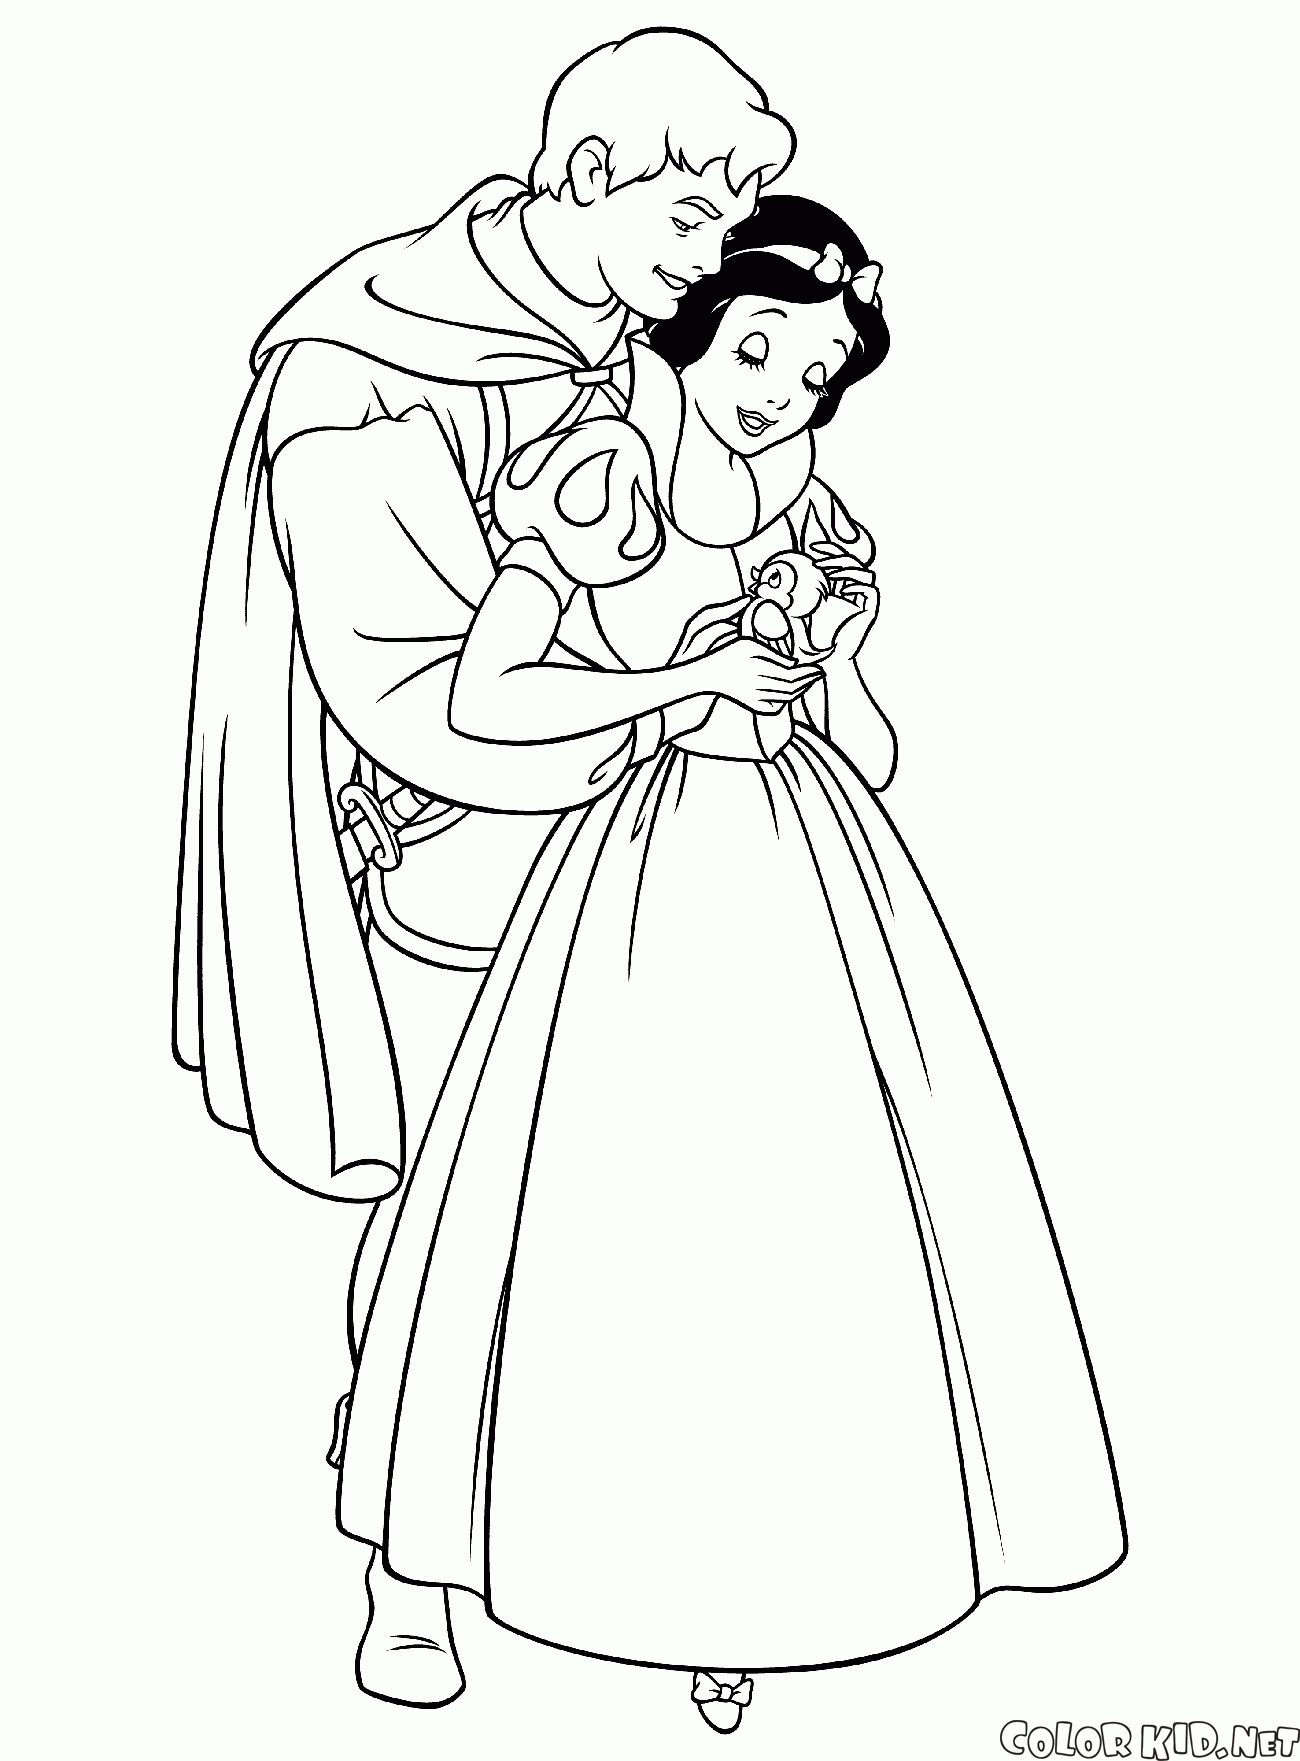 Blancanieves y el príncipe de amor